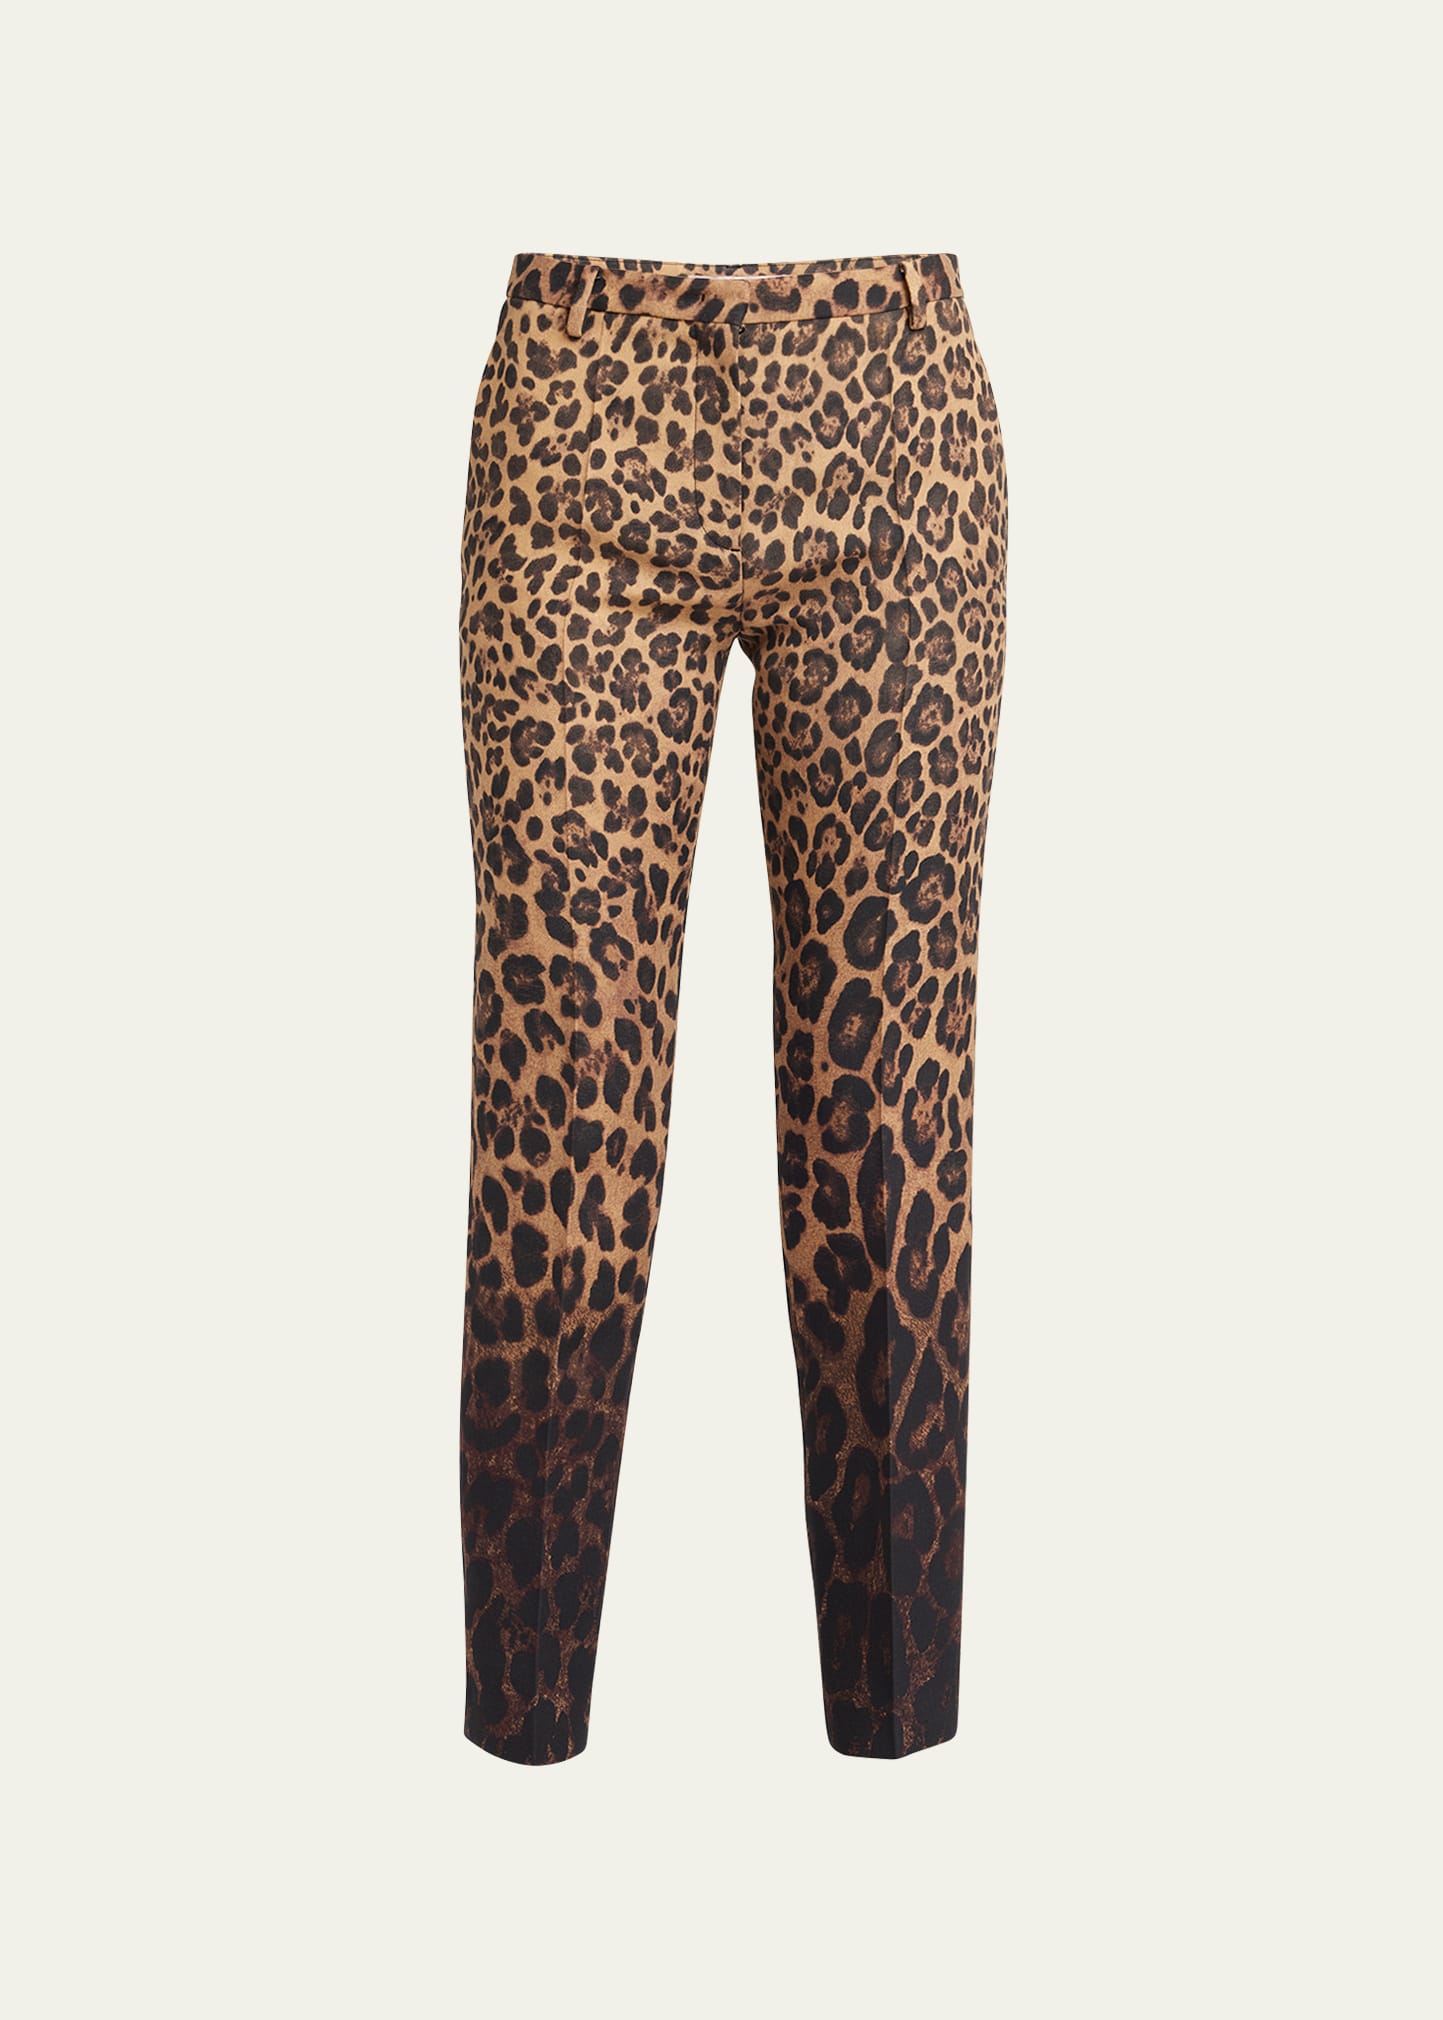 Leopard Print Ombre Slim-Fit Pants